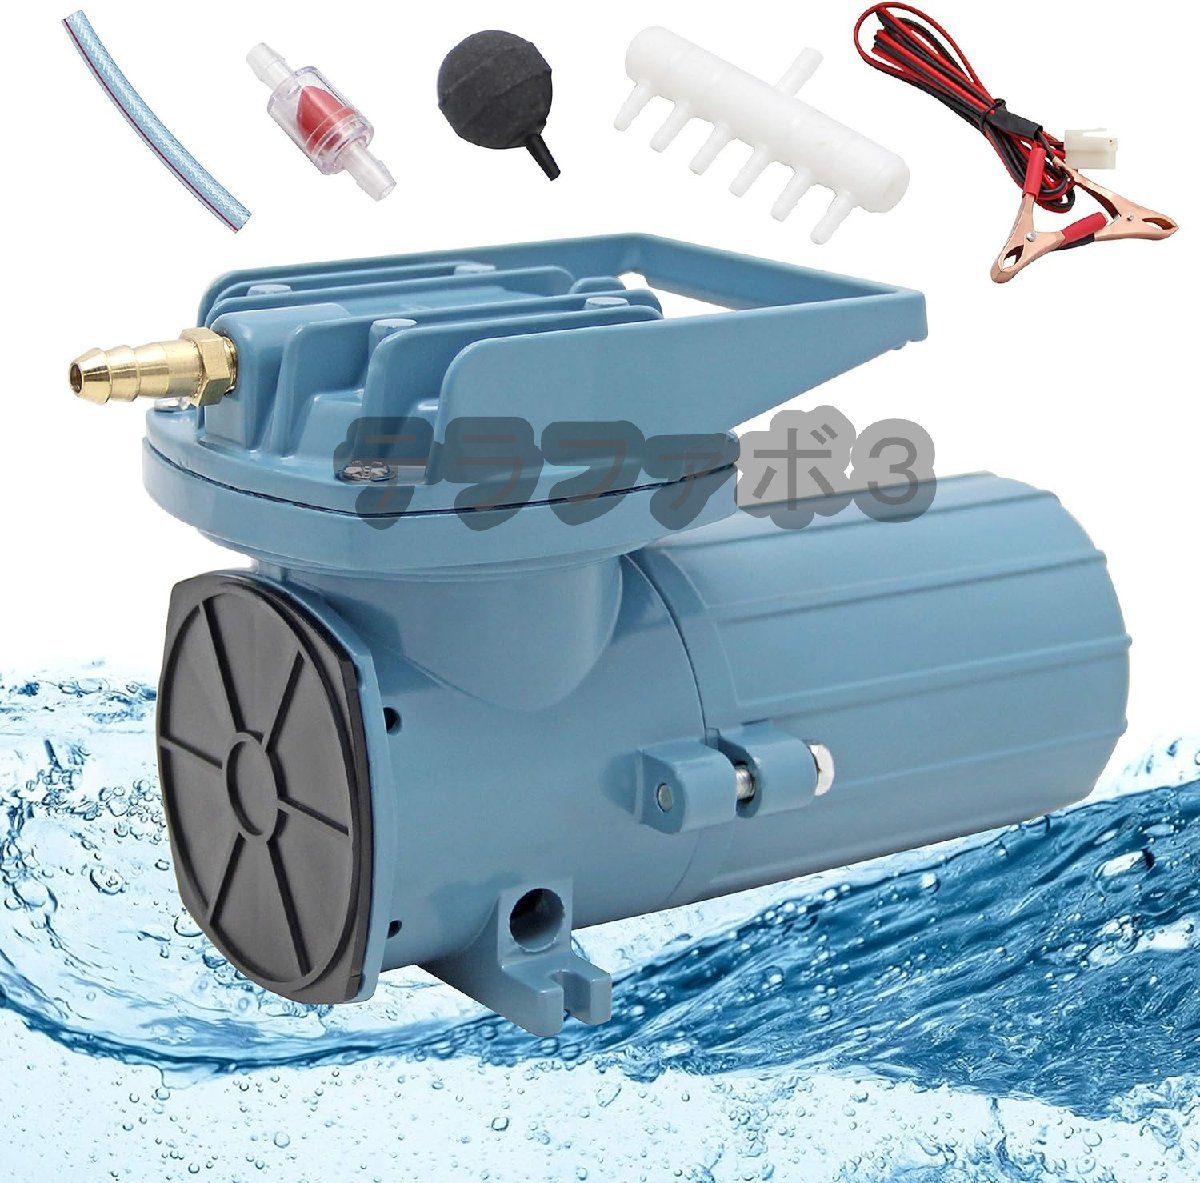 エアーポンプ 35W 水槽用 酸素供給 水槽曝気 12V 吐出量 68L /分 吐出口6つ 逆流防止弁付 お釣り用具